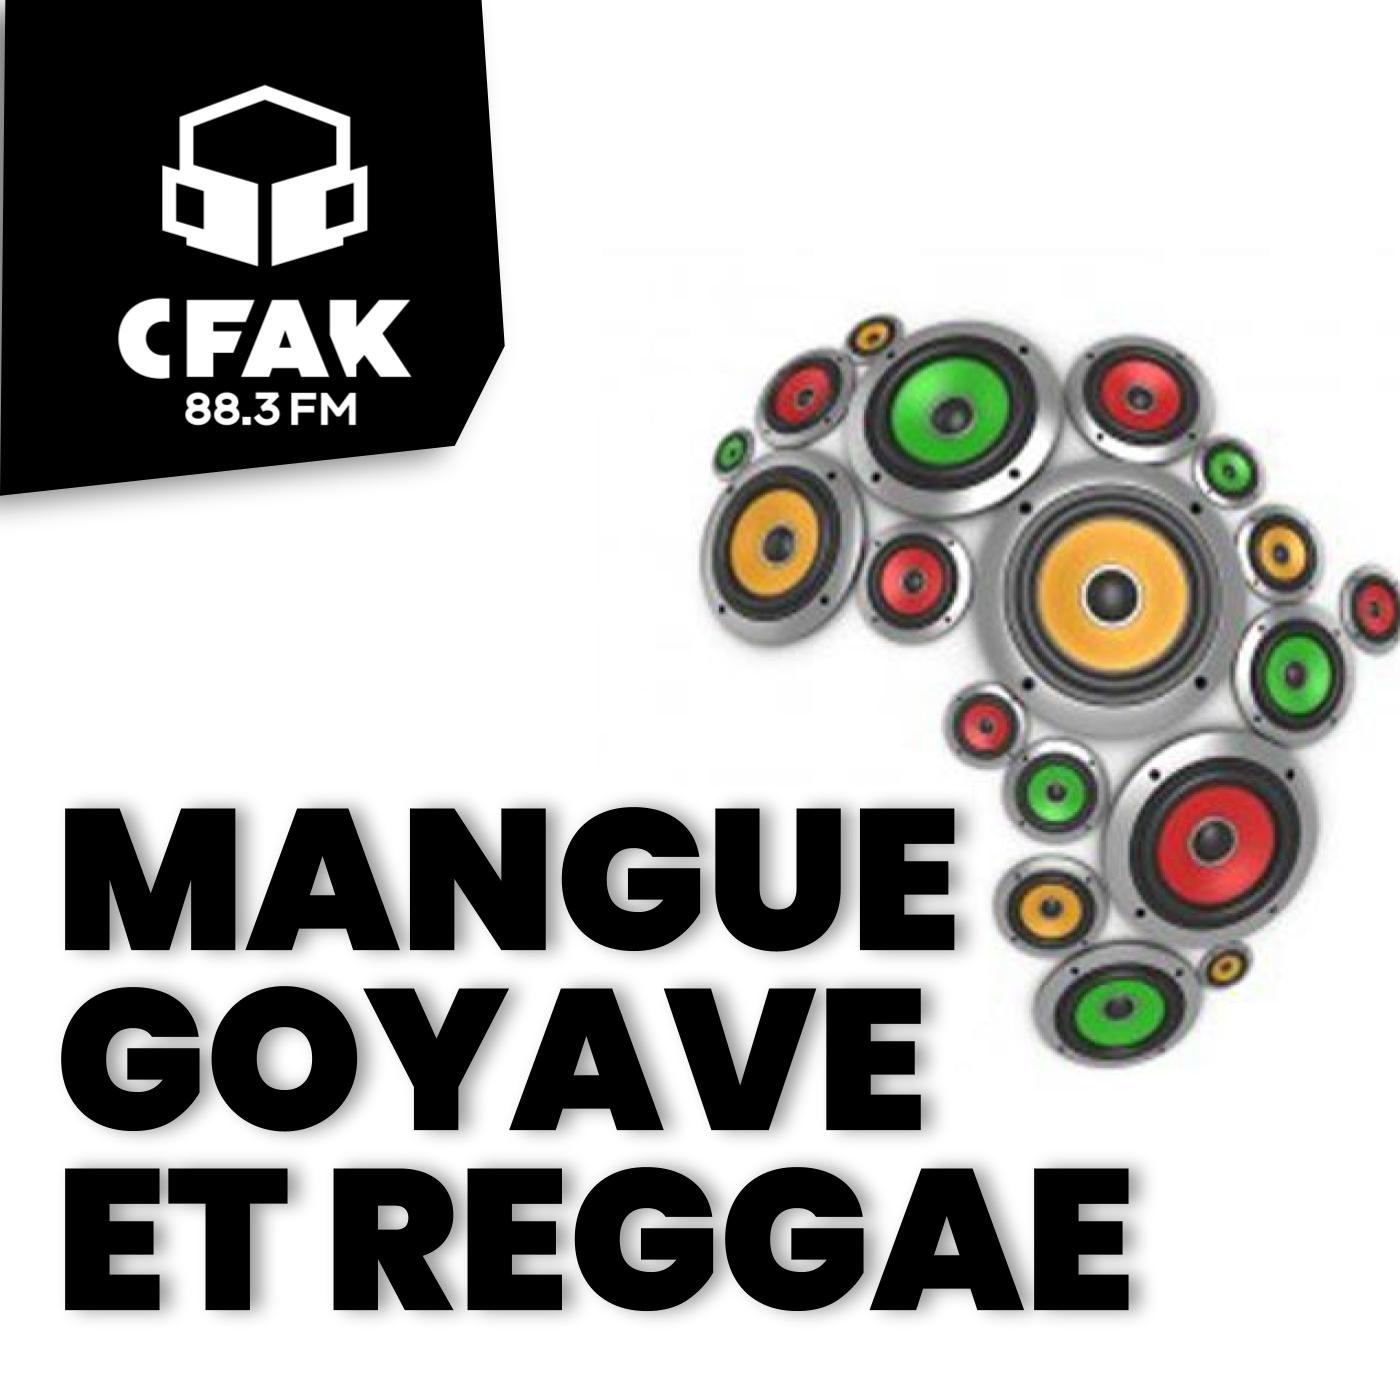 Mangue, goyave et reggae - 2 septembre 2022